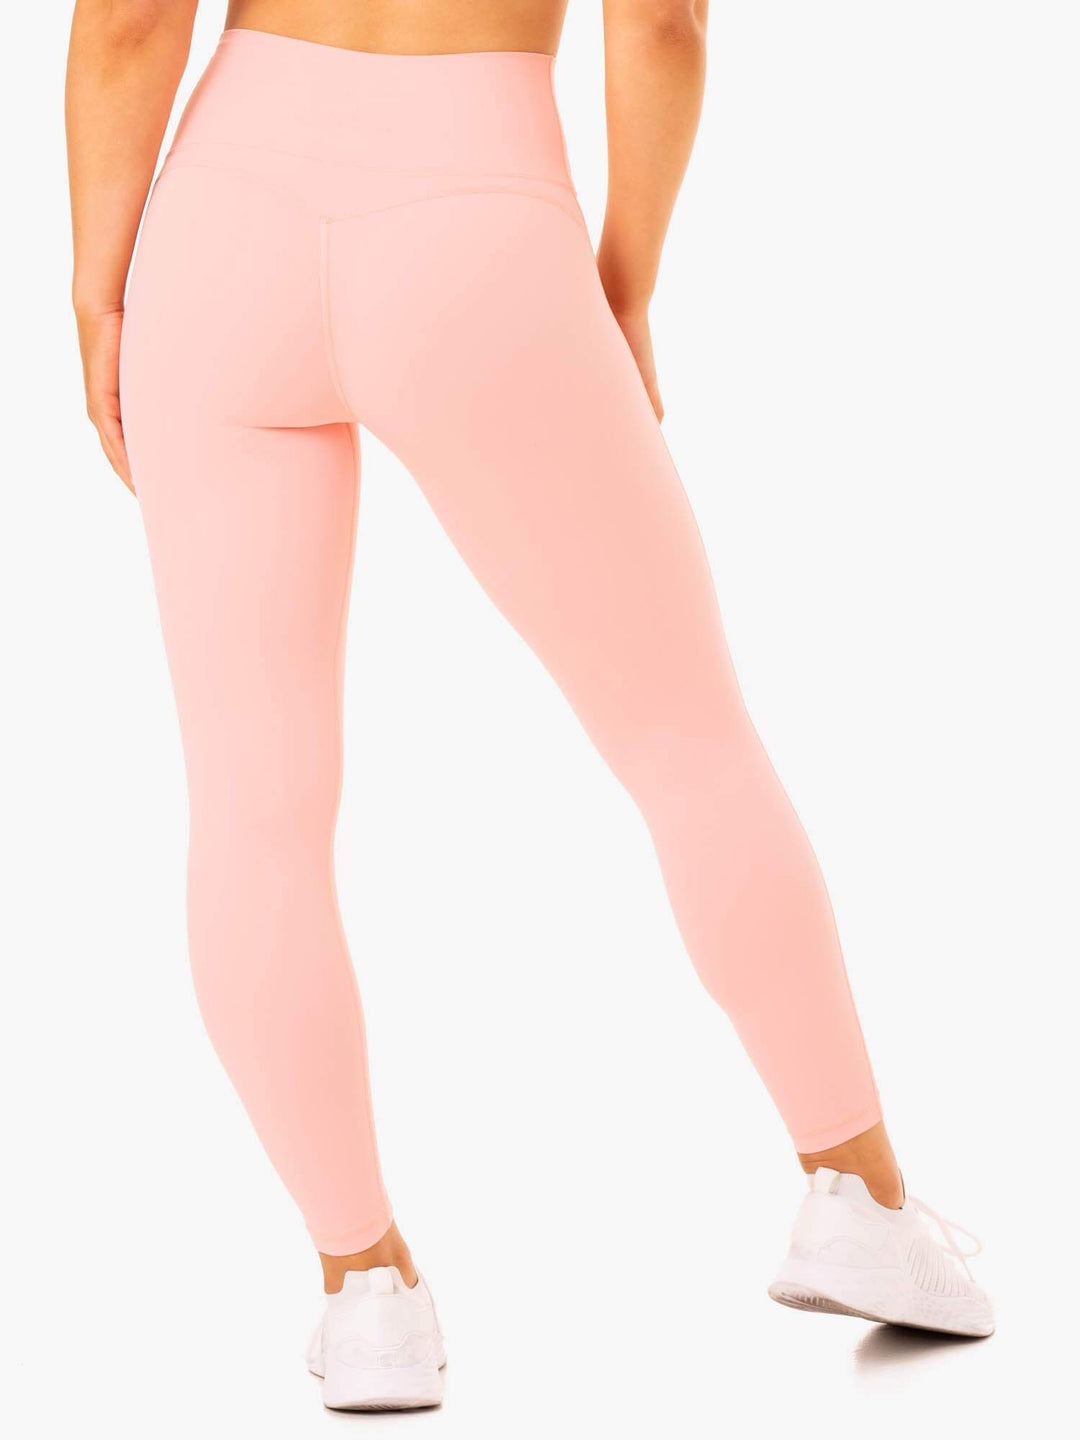 NKD Align Leggings - Pink Clothing Ryderwear 